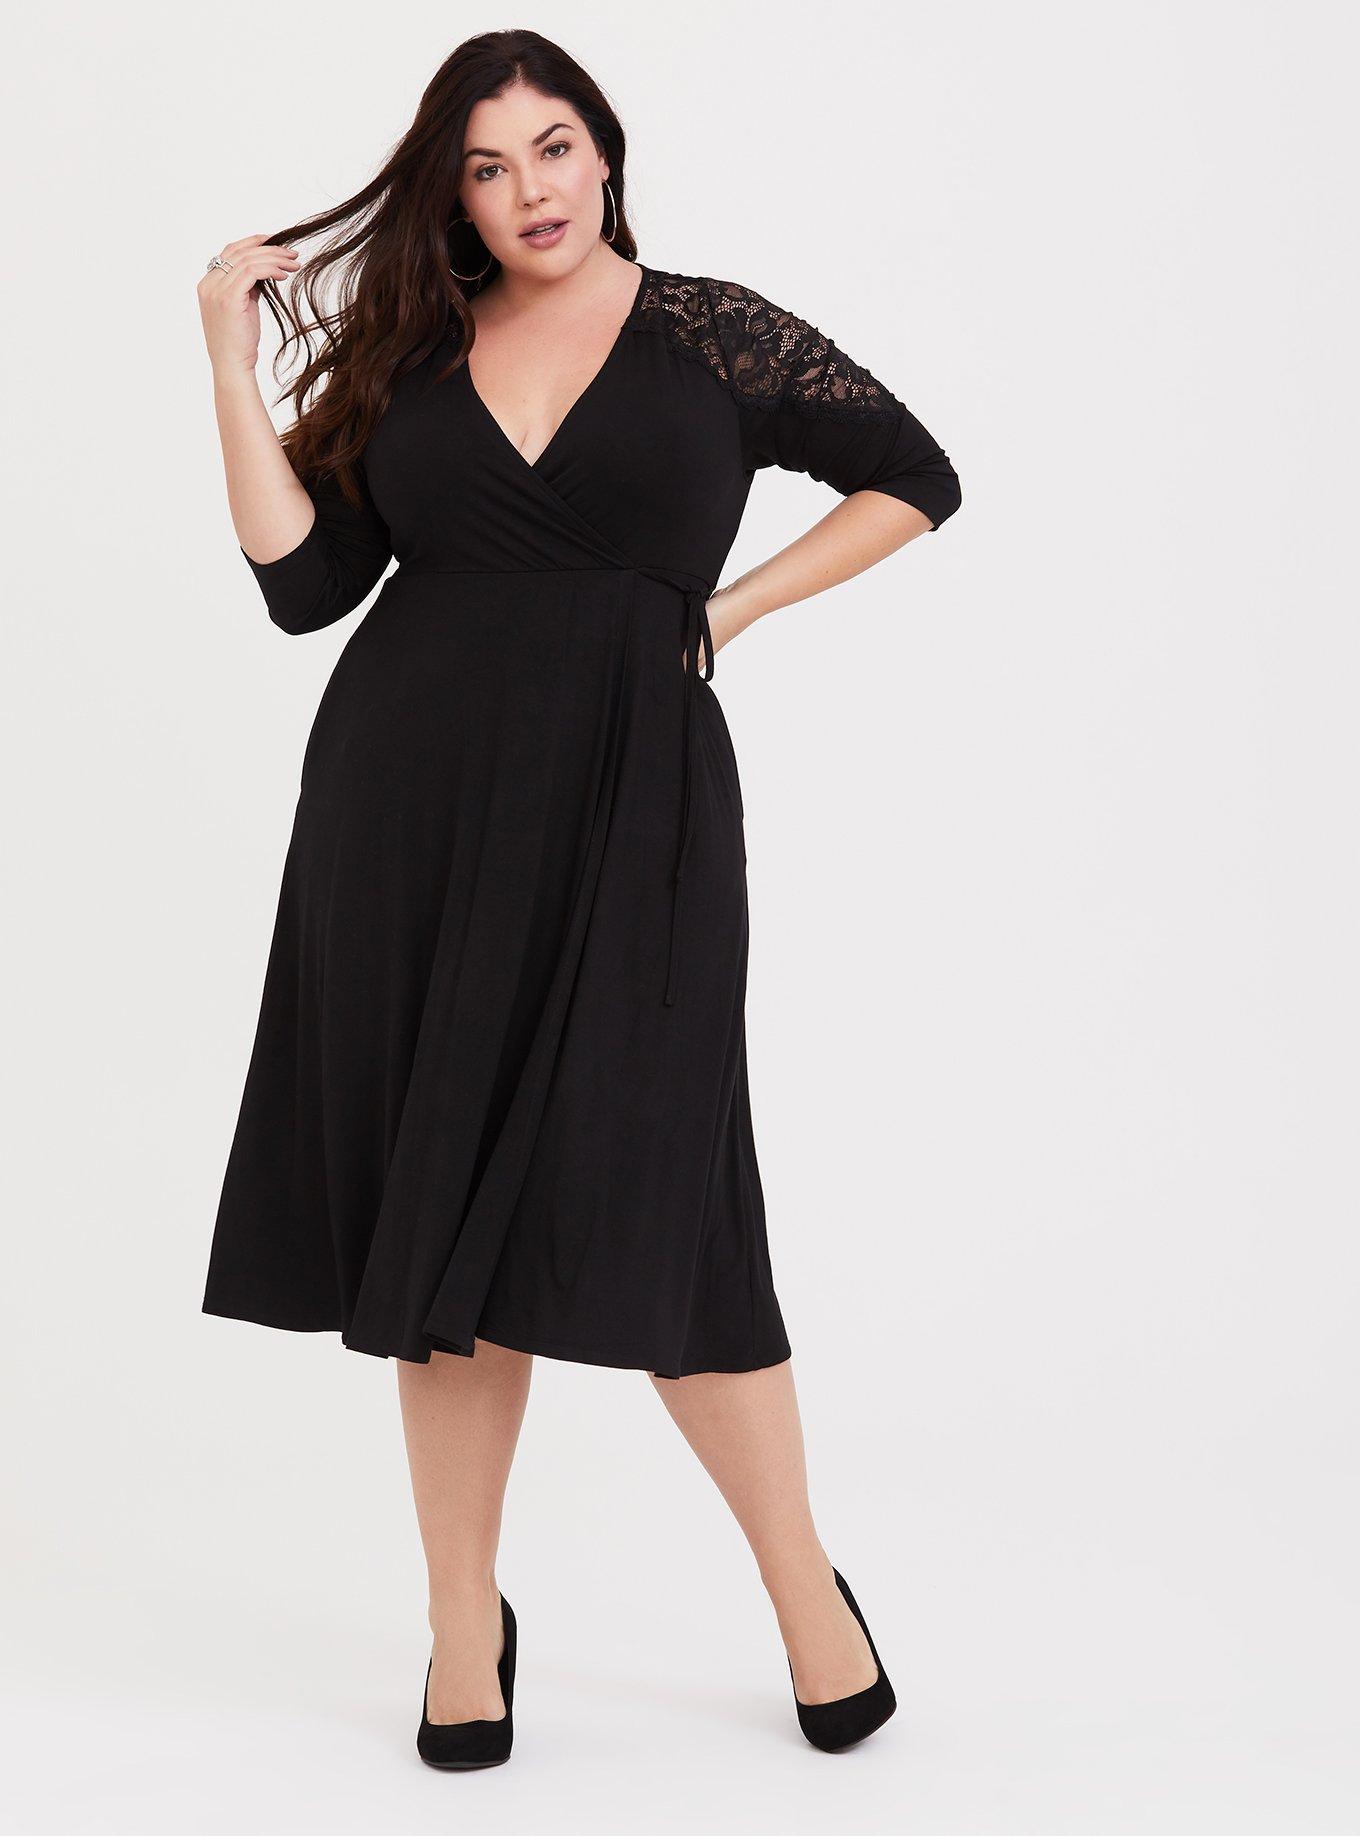 Plus Size - Black Lace Inset Jersey Wrap Dress - Torrid